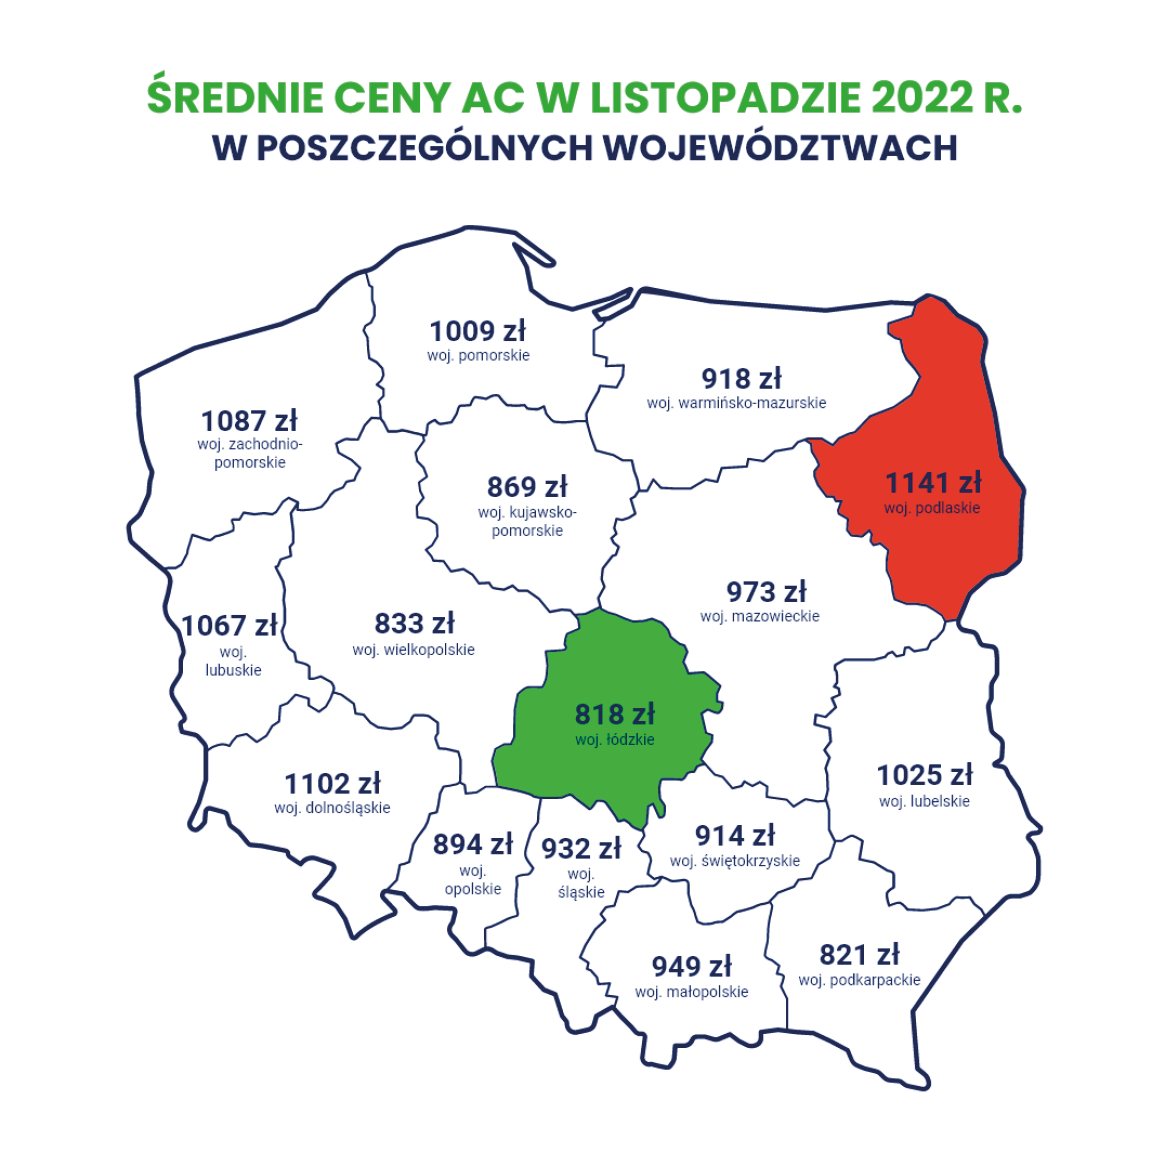 Najniższe ceny AC w 2022 r, występowały w województwie łódzkim.